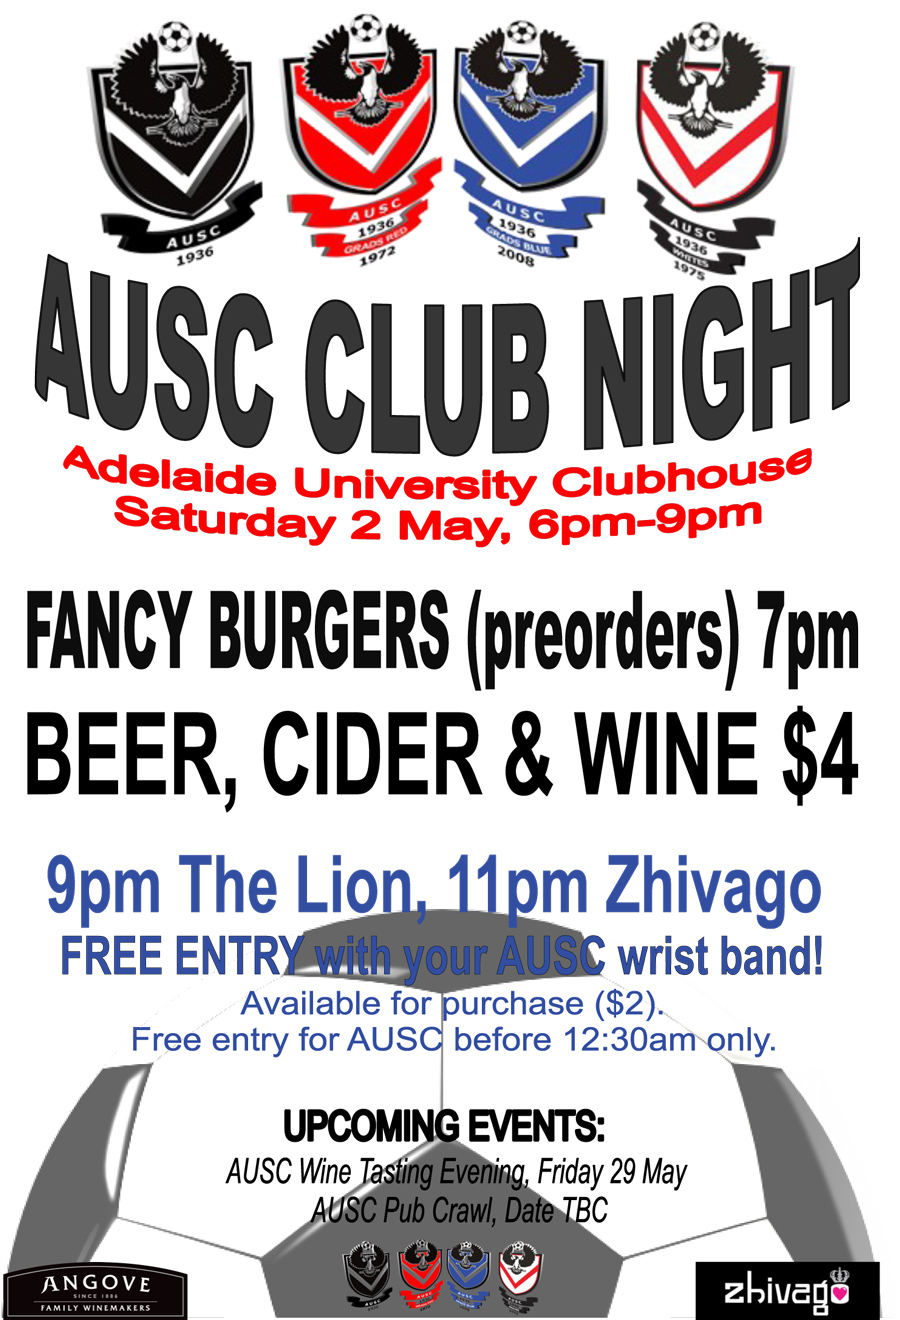 Club night flyer